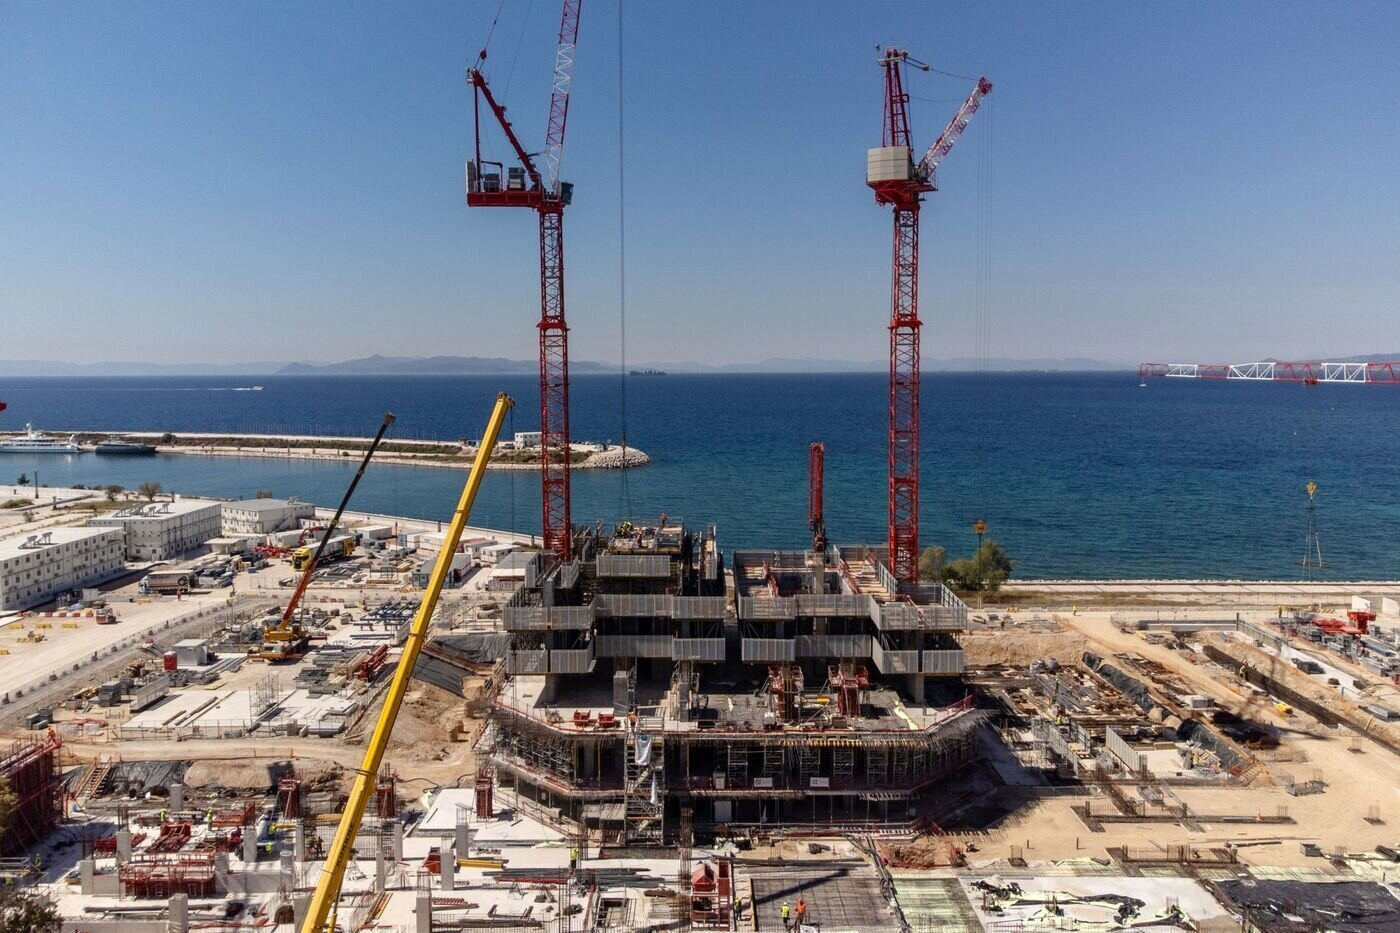 Tháp Marina, tòa nhà chọc trời đầu tiên của Hy Lạp đang được xây dựng. (Ảnh: Bloomberg)